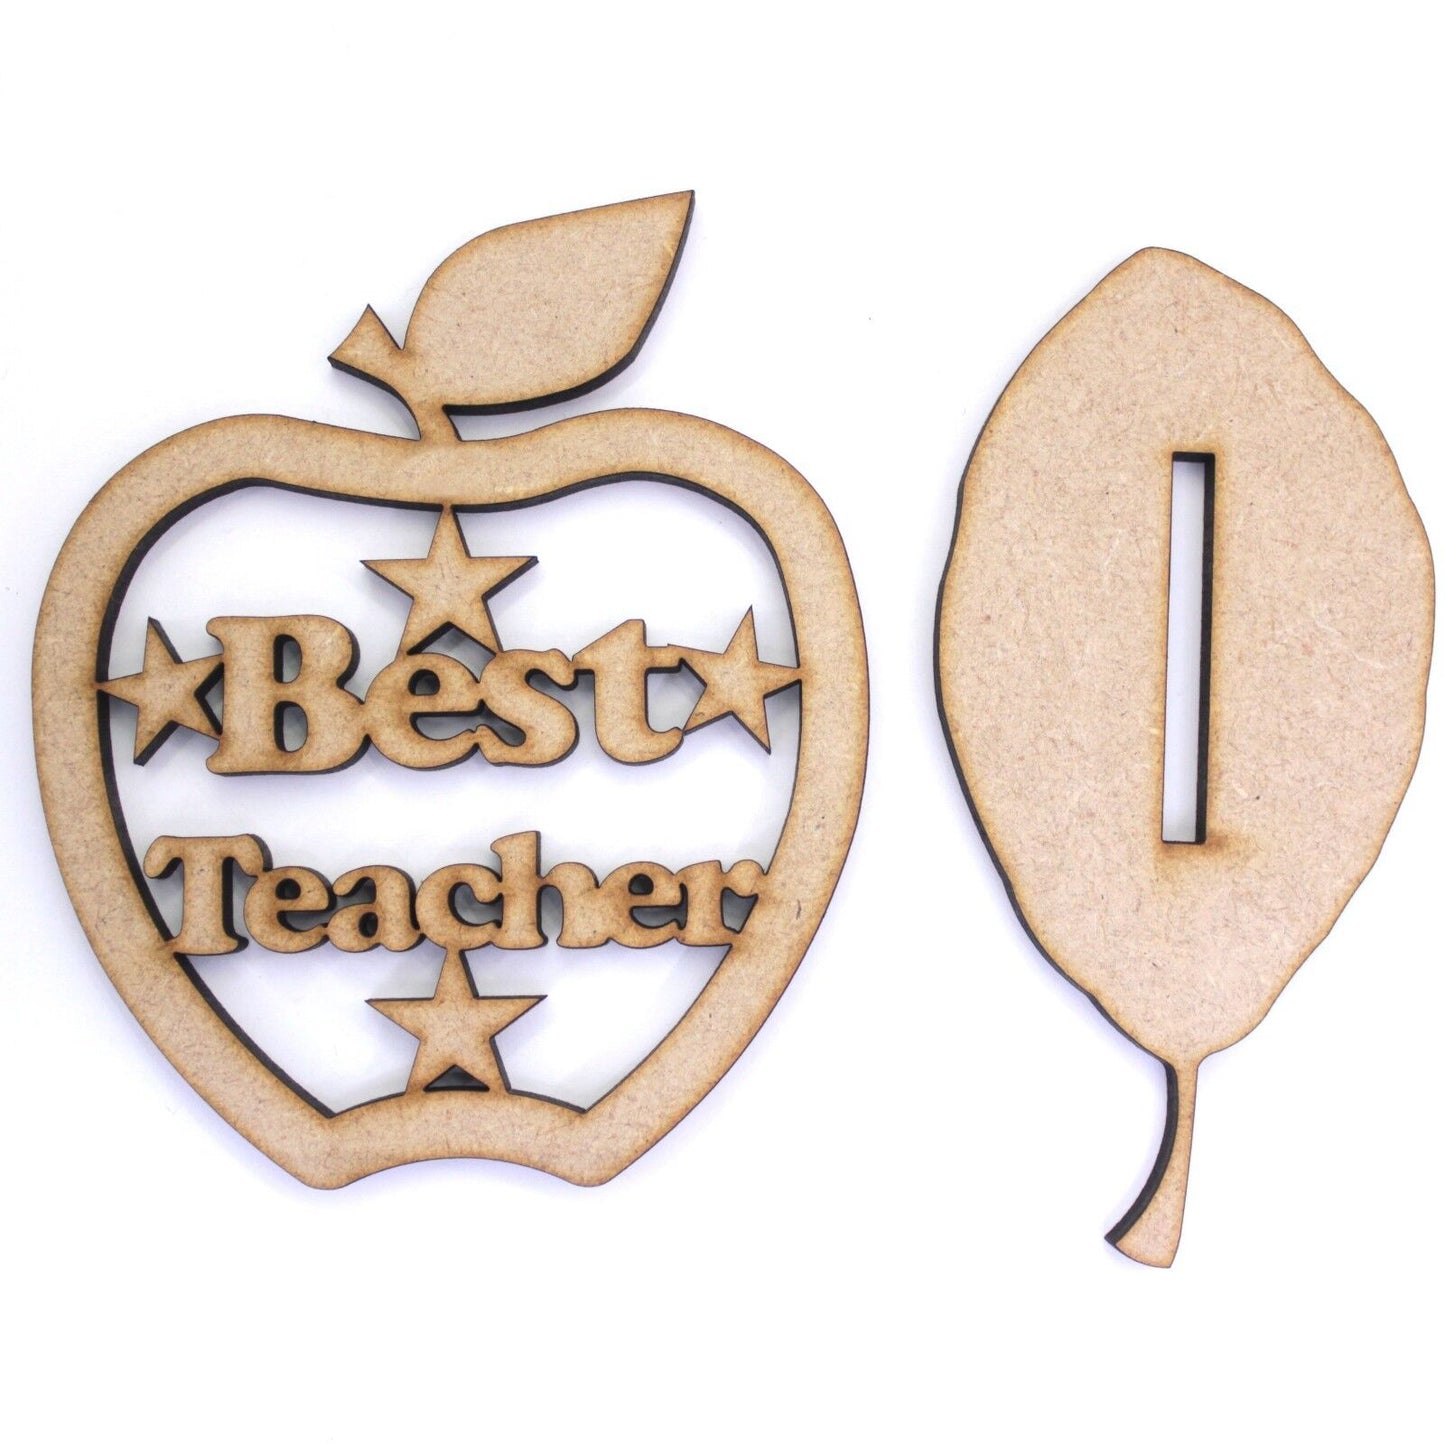 Best Teacher Stand / Hanger Apple shape with Leaf shape base. 4mm MDF Gift